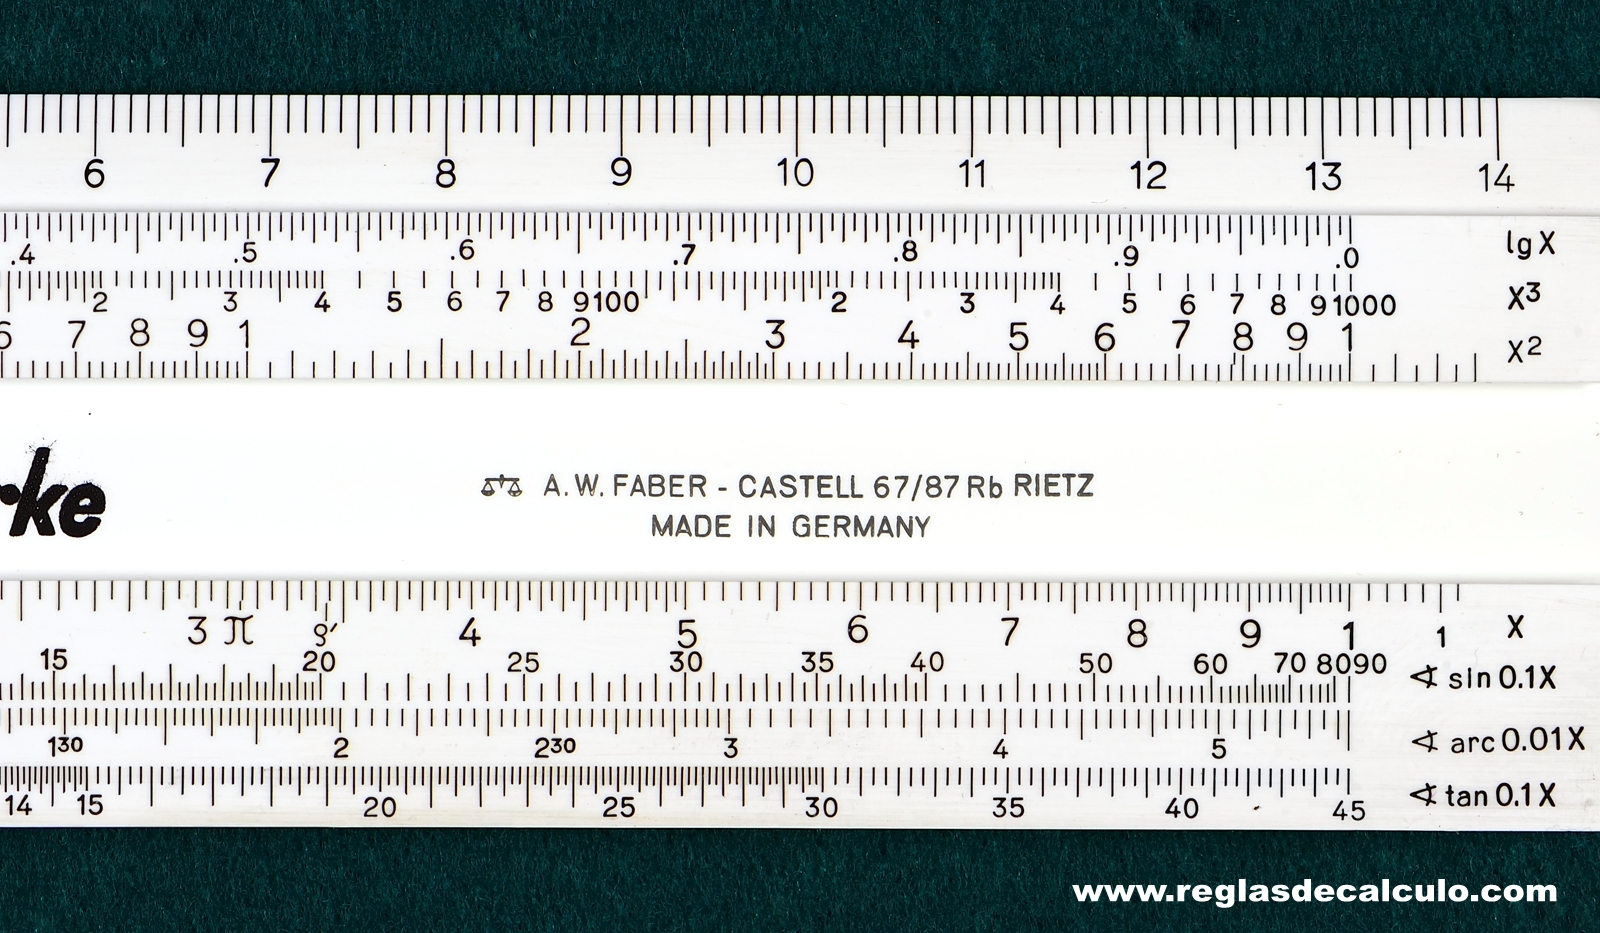 Faber Castell 67/87RB Addiator Rietz Regla de Calculo Slide rule